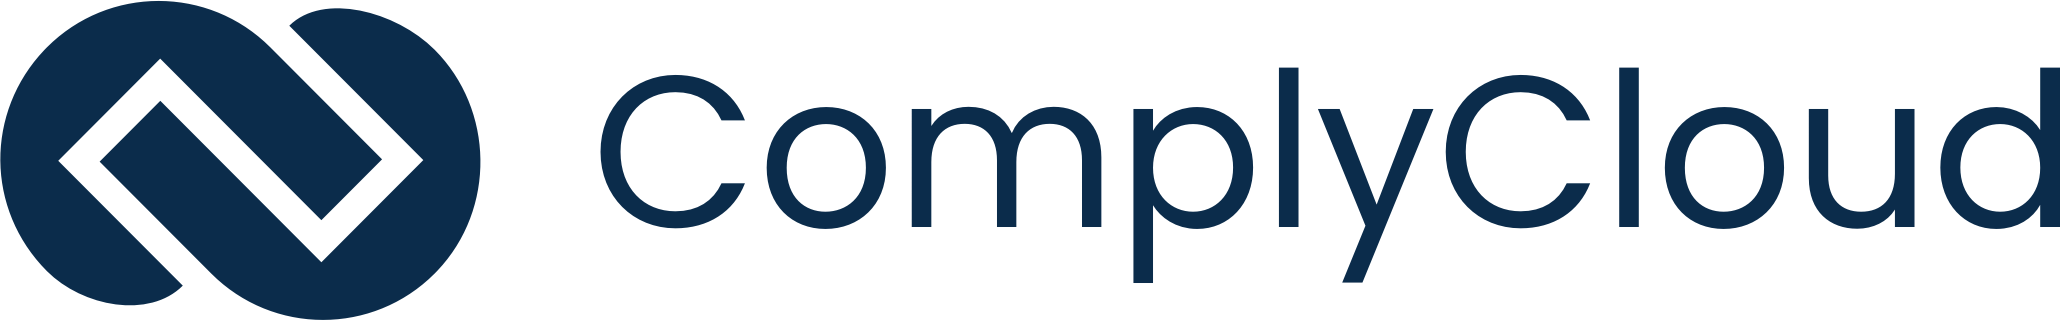 ComplyCloud logo